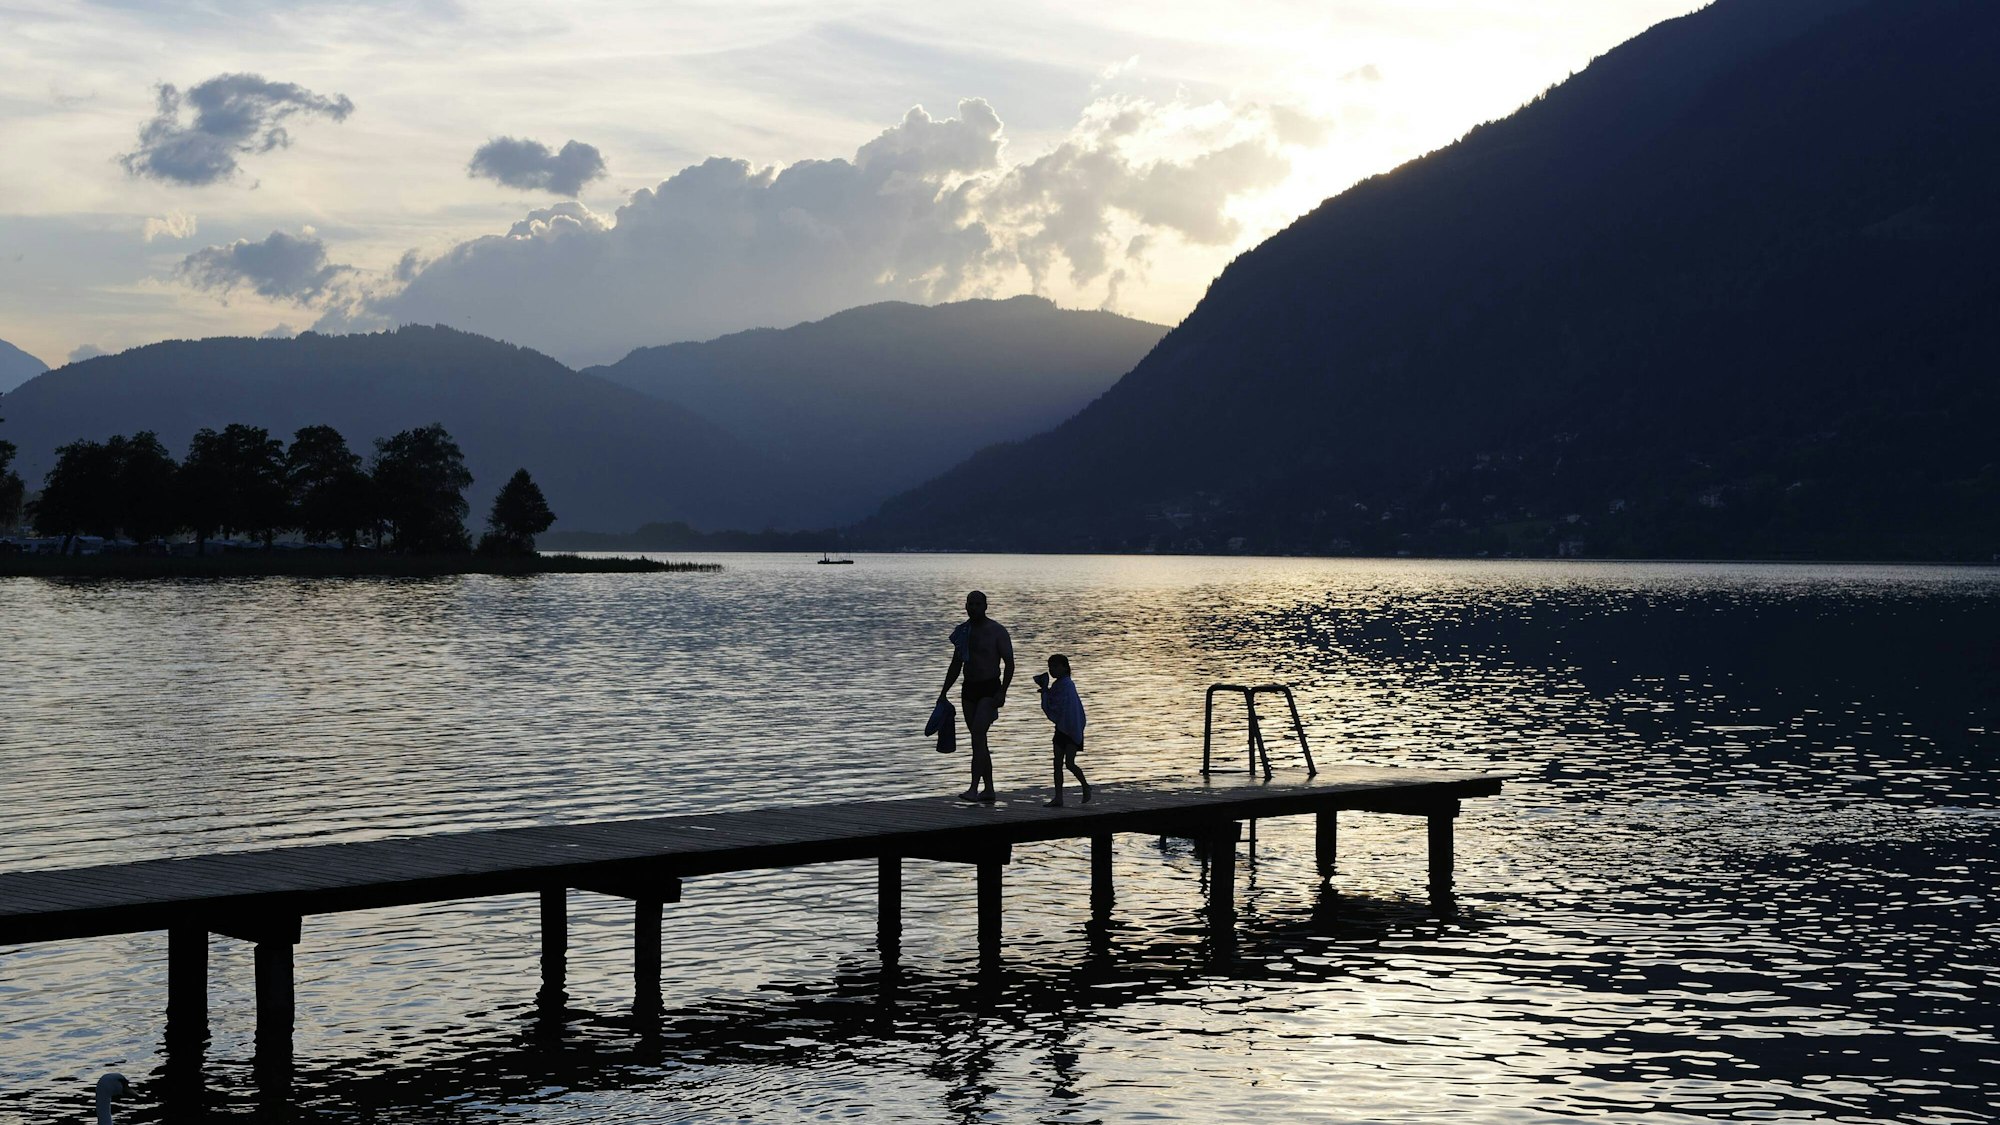 Der Ossiacher See in Kärnten (Österreich) wirkt malerisch, ist ein beliebtes Ziel für viele Touristen. Doch er birgt ein düsteres Kriegs-Geheimnis. Einem Urlauber aus Deutschland wurde das nun zum Verhängnis.